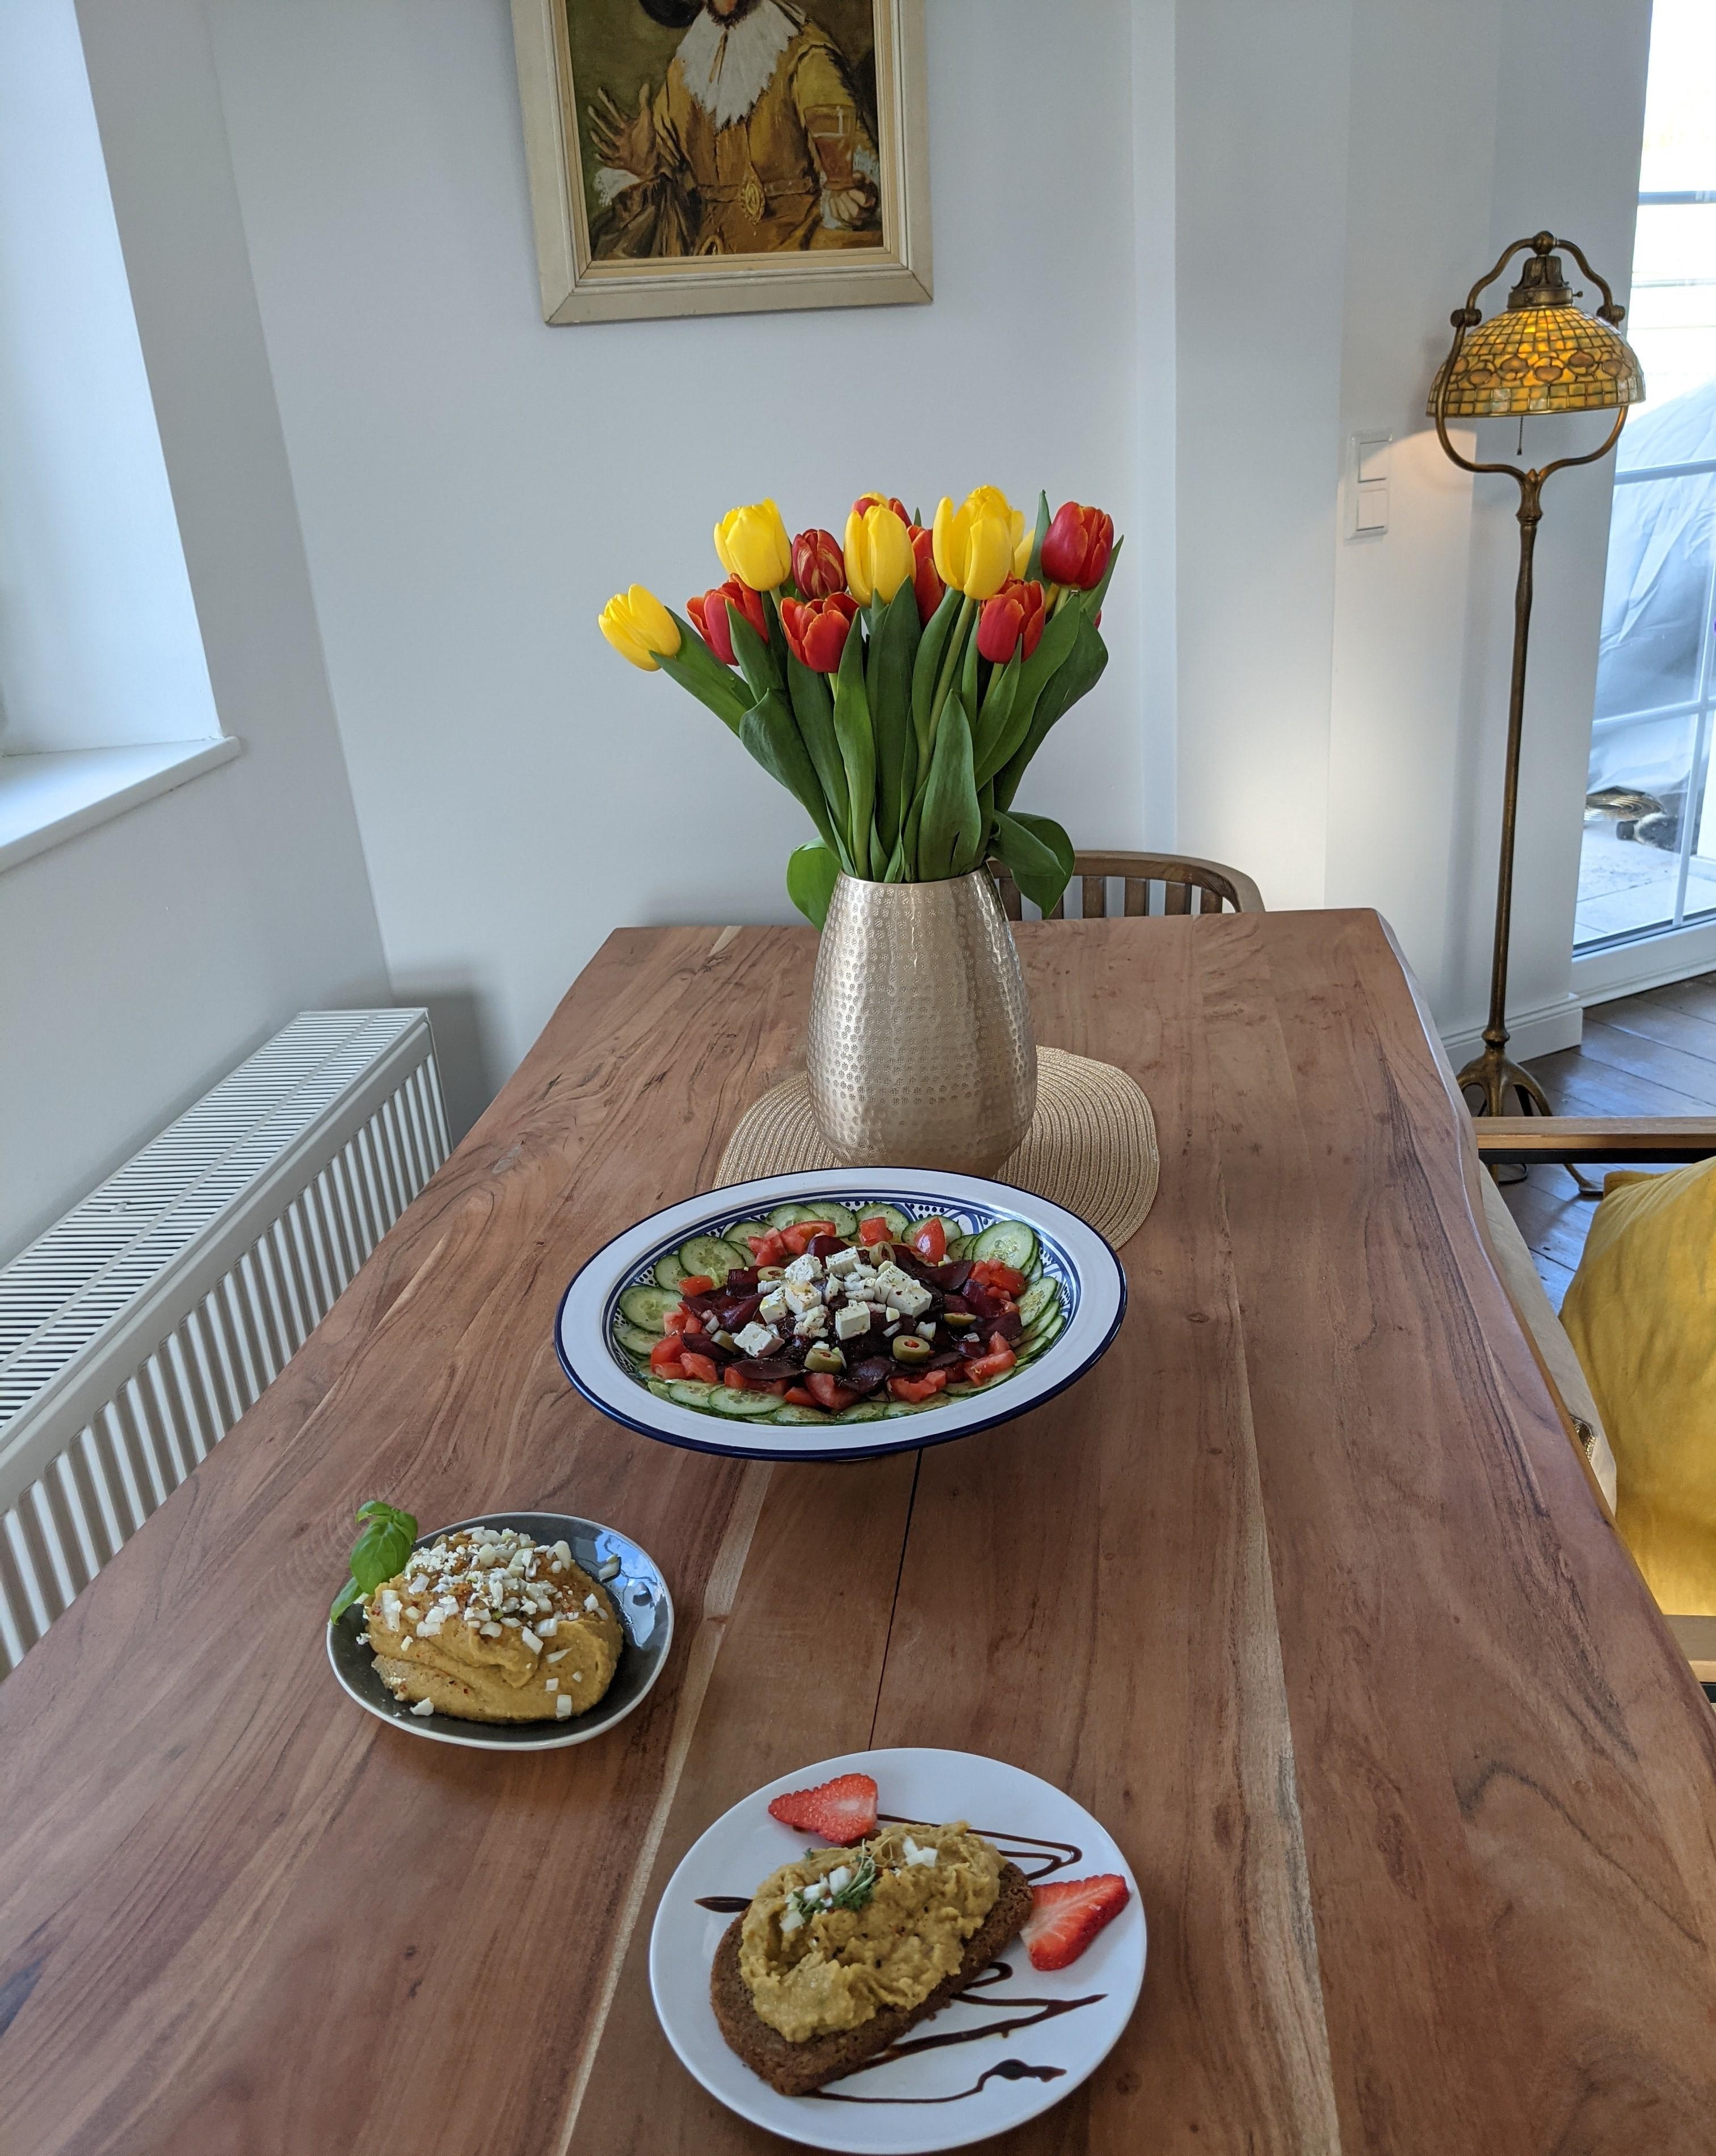 Rote Beete Salat mit Feta 🇬🇷🌿 und veganes Saftdattel-Linsen-Curry 🇮🇳Dip #eattheworldtour #foodchallenge